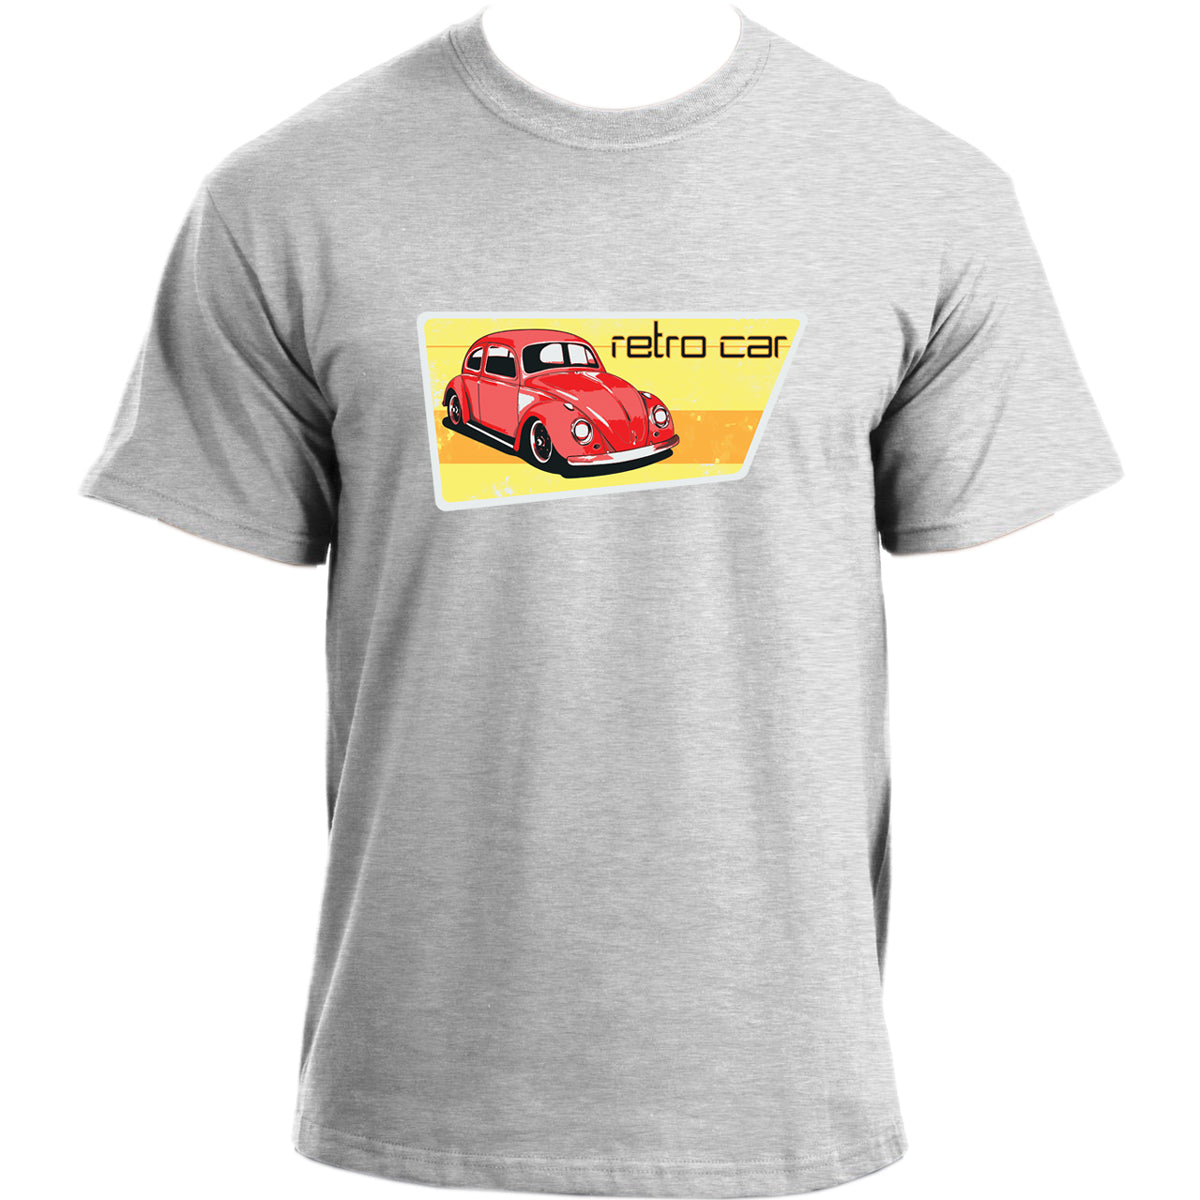 Retro Car T-Shirt I Car Enthusiast T Shirt I Vintage Automobile Classic Car Tshirt